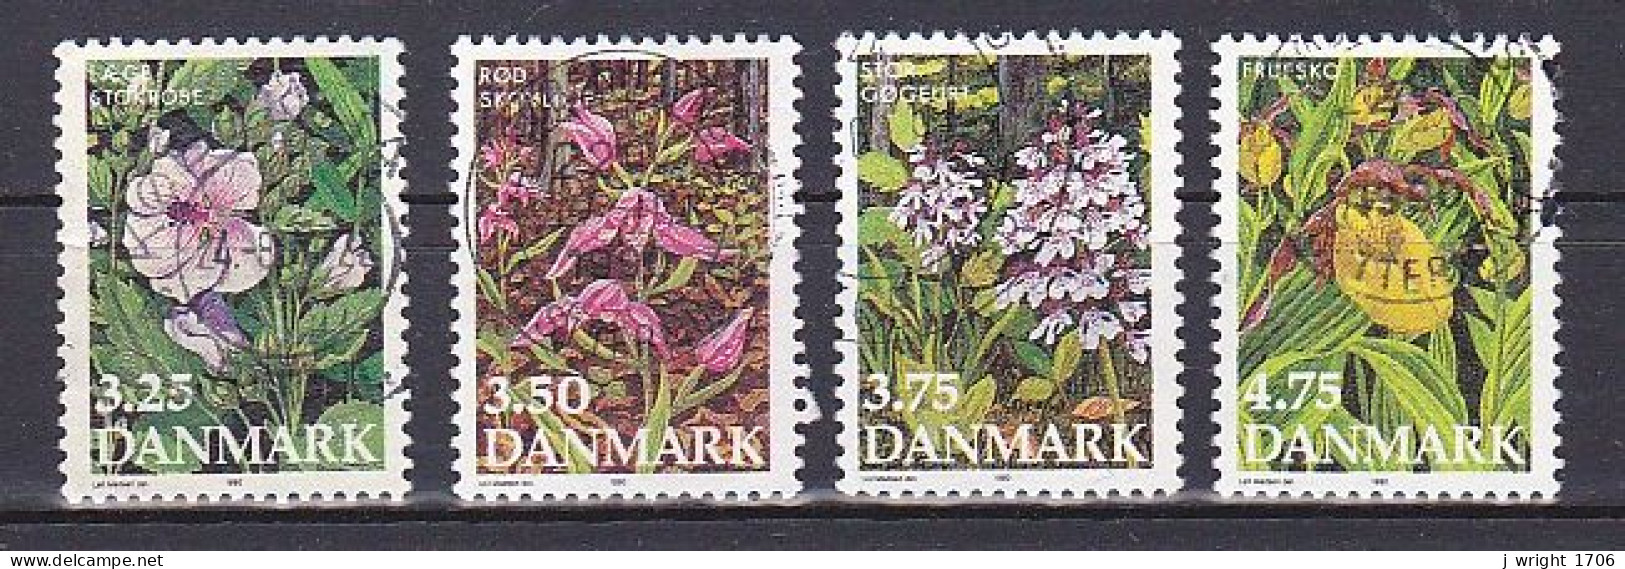 Denmark, 1990, Endangered Flowers, Set, USED - Gebraucht